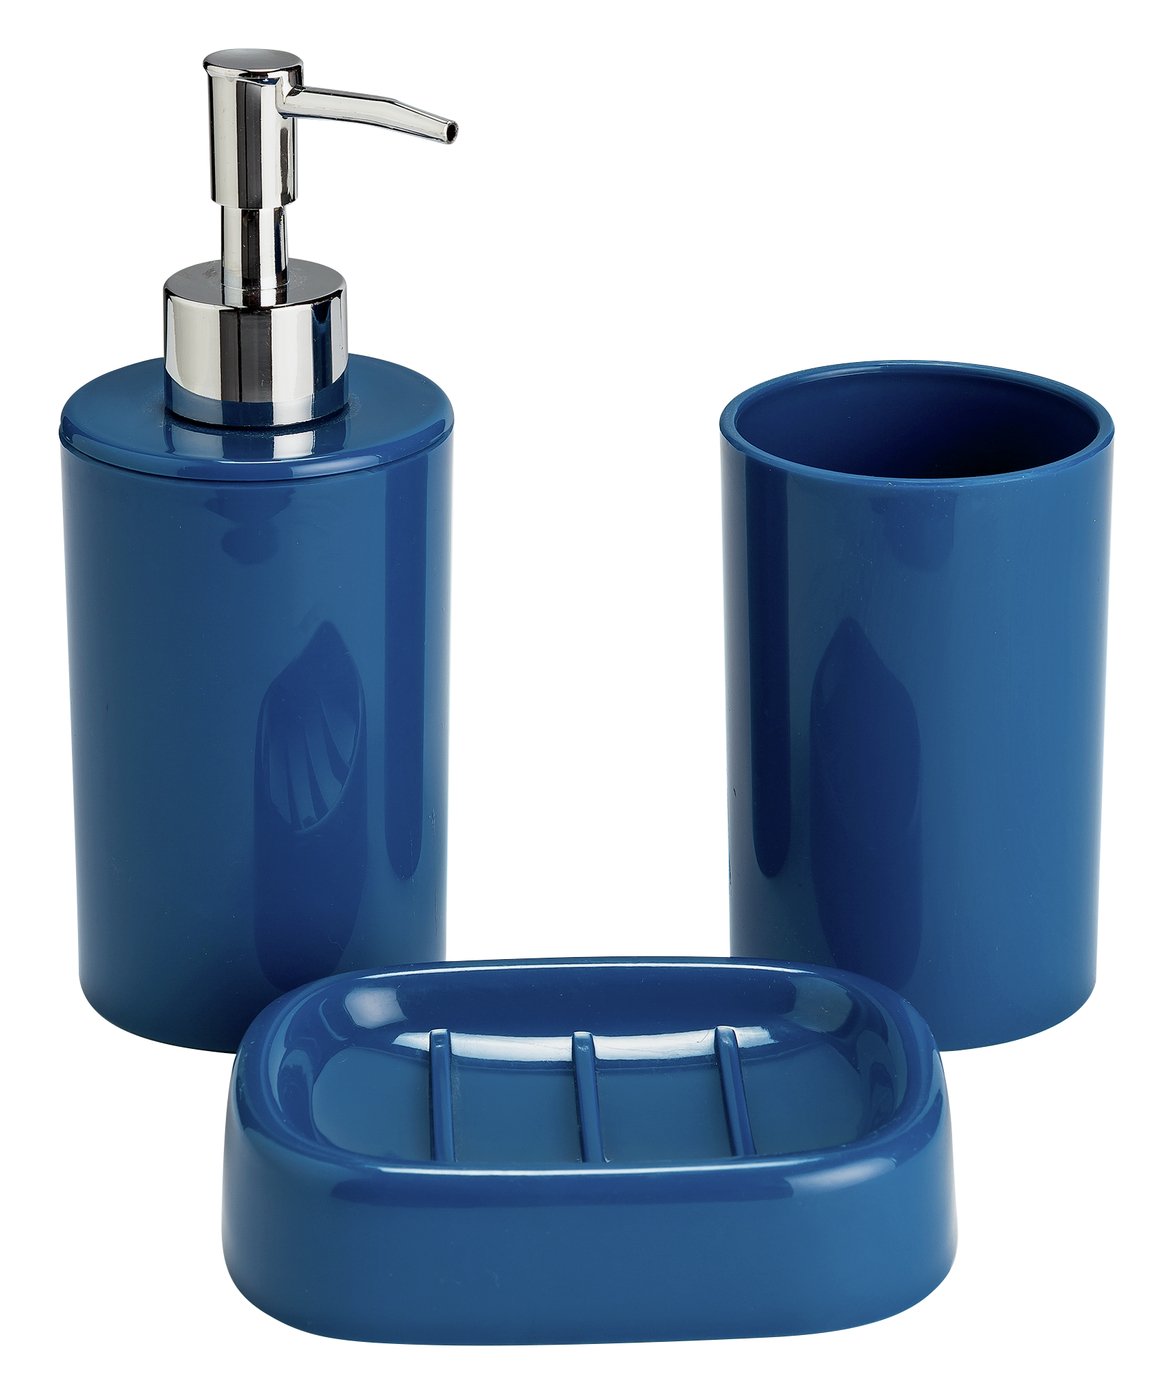 Argos Home 3 Piece Bathroom Accessory Set - Ink Blue